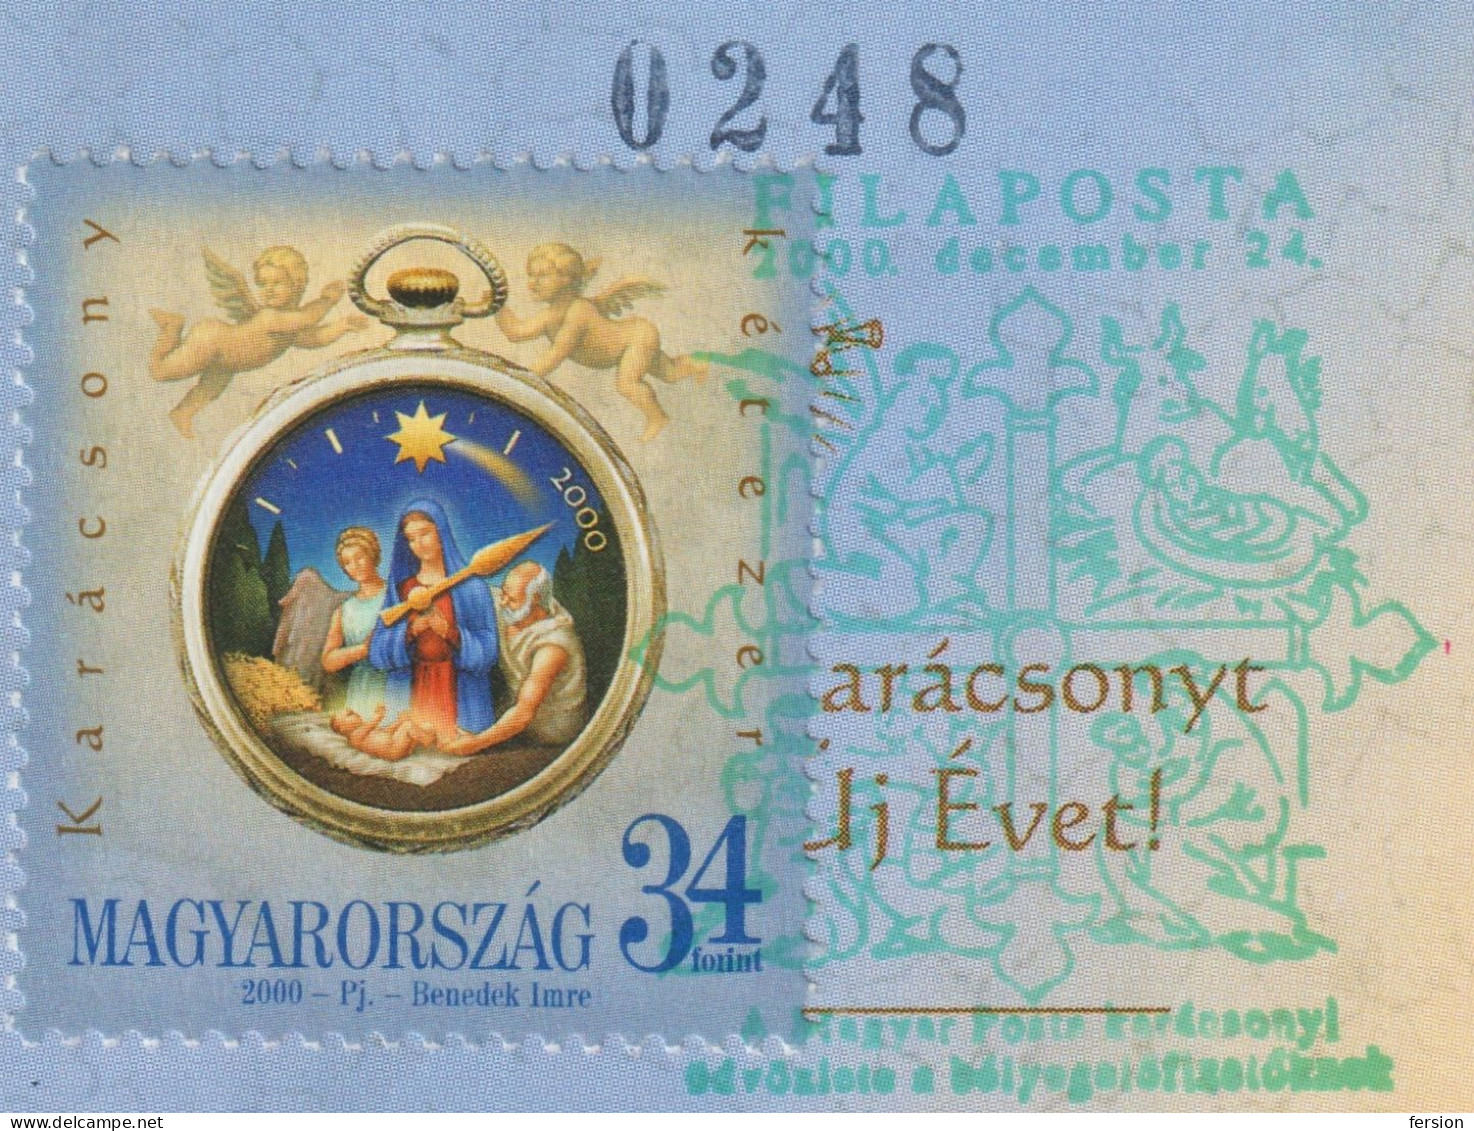 CHRISTMAS Gift POSTCARD For Stamp Collectors Subscriber RRR Clock Jesus Mary 2000 Hungary FILAPOSTA FDC Postmark - Christmas